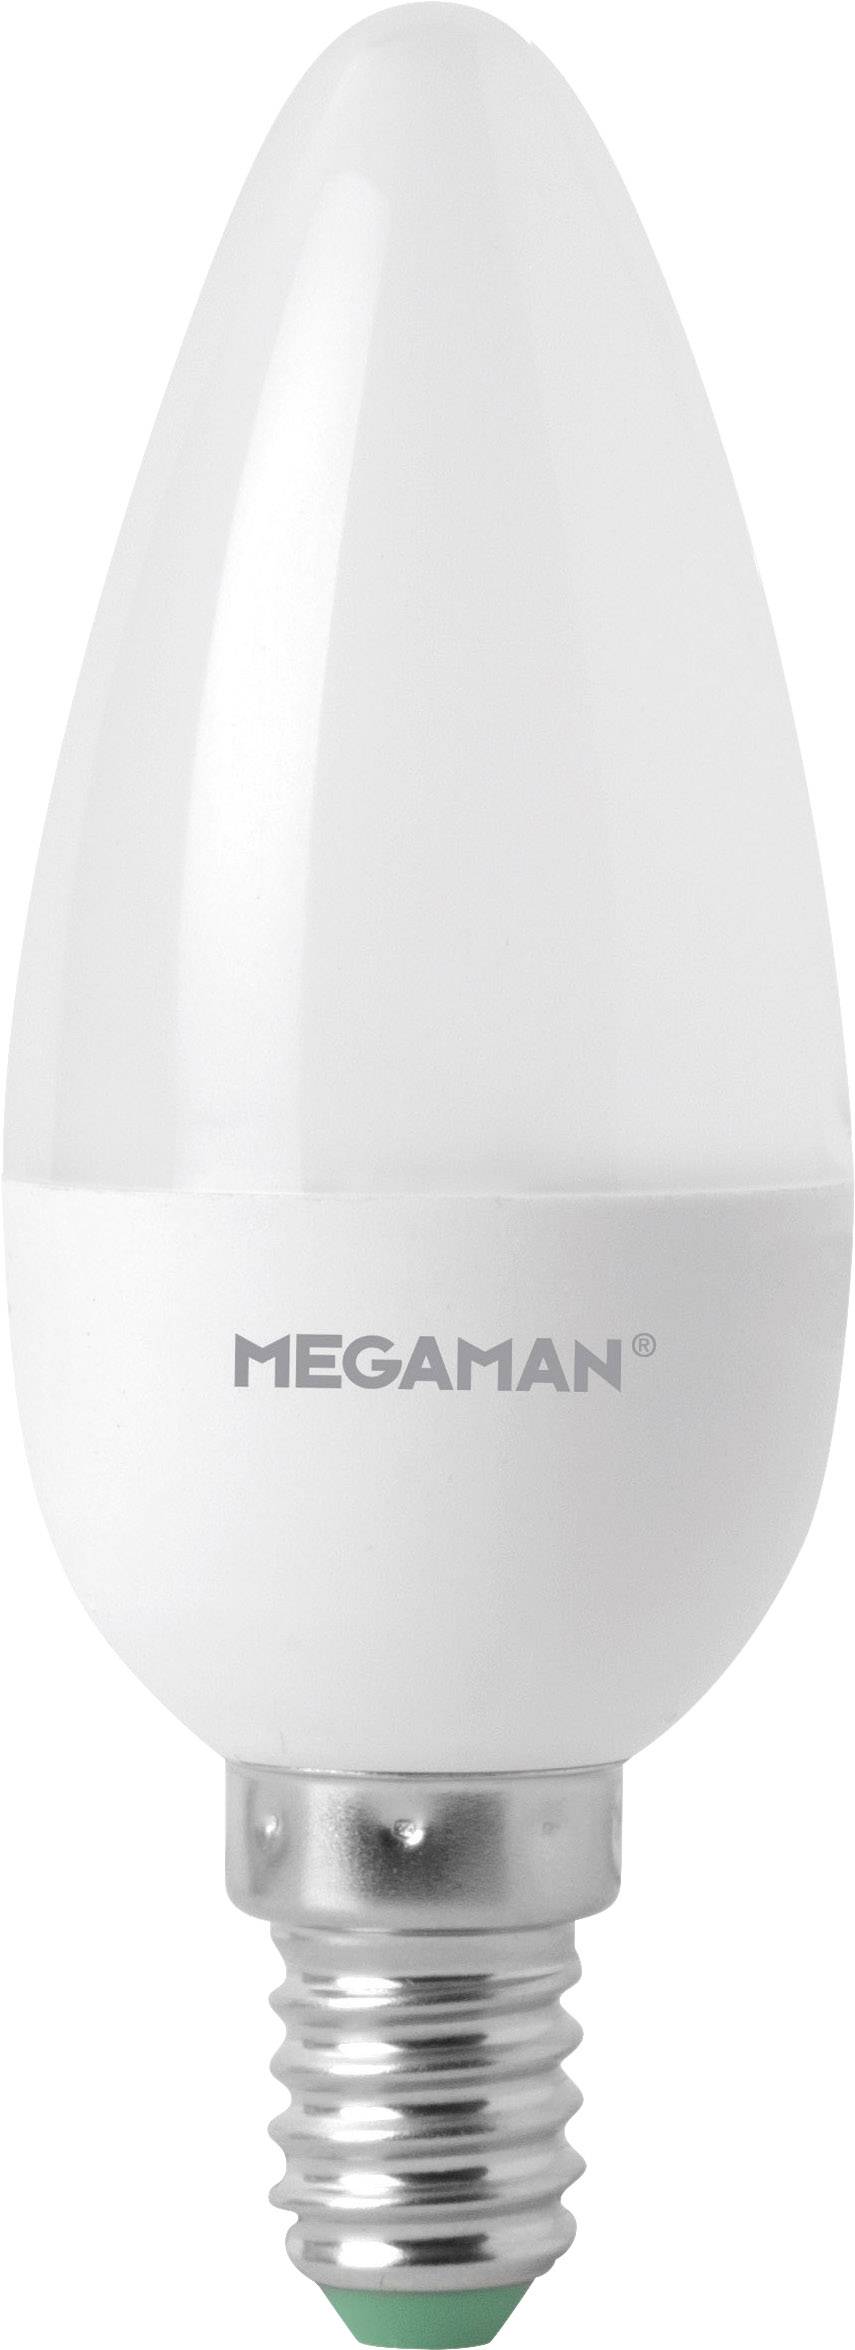 MEGAMAN LED EEK A+ (A++ - E) E14 Kerzenform 5 W = 40 W Warmweiß (Ø x L) 35 mm x 100 mm dimmbar